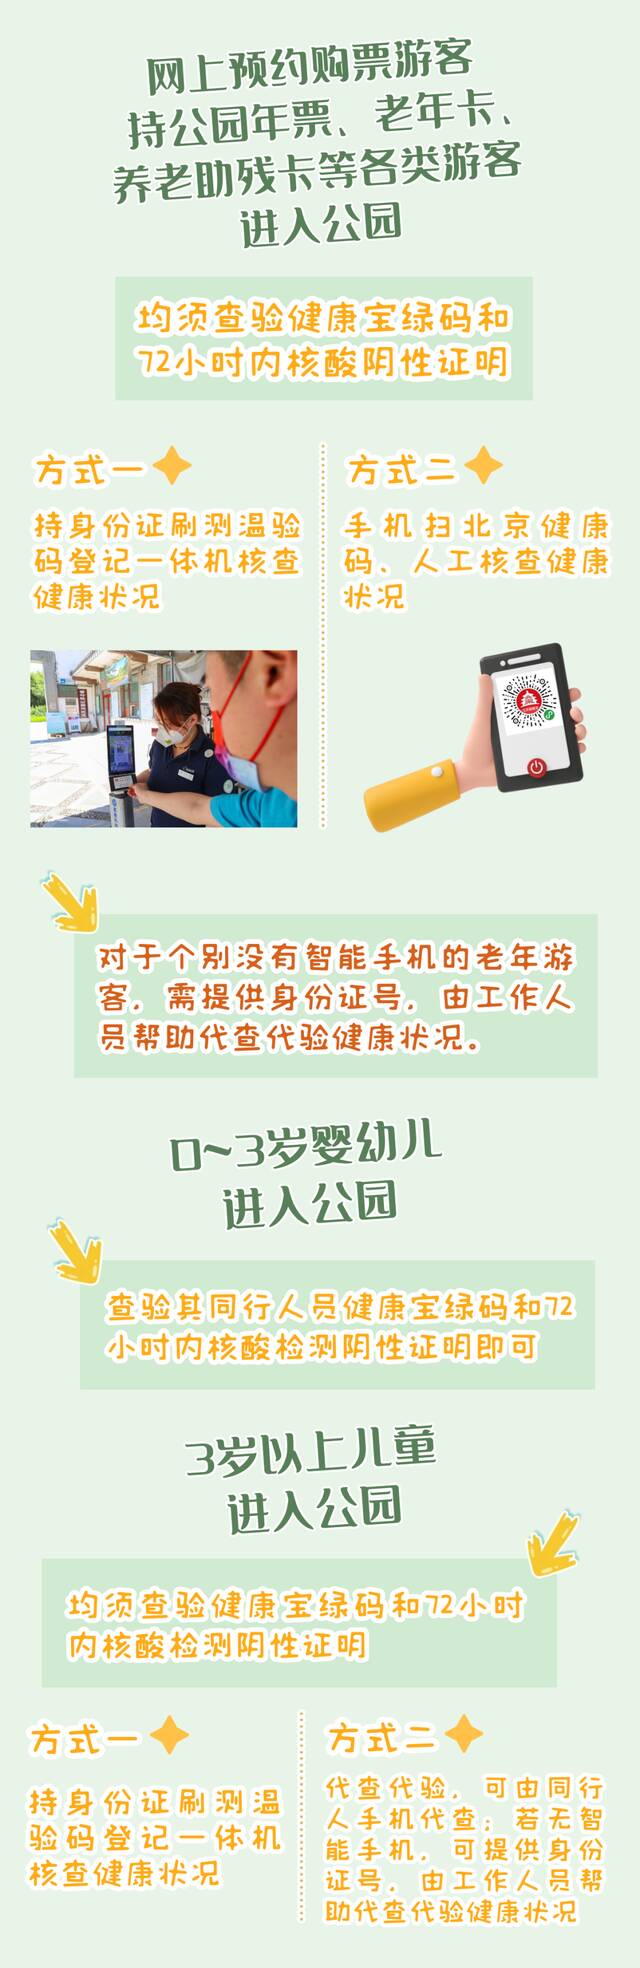 北京：0至3岁婴幼儿进入公园查验同行人员绿码及72小时内核酸